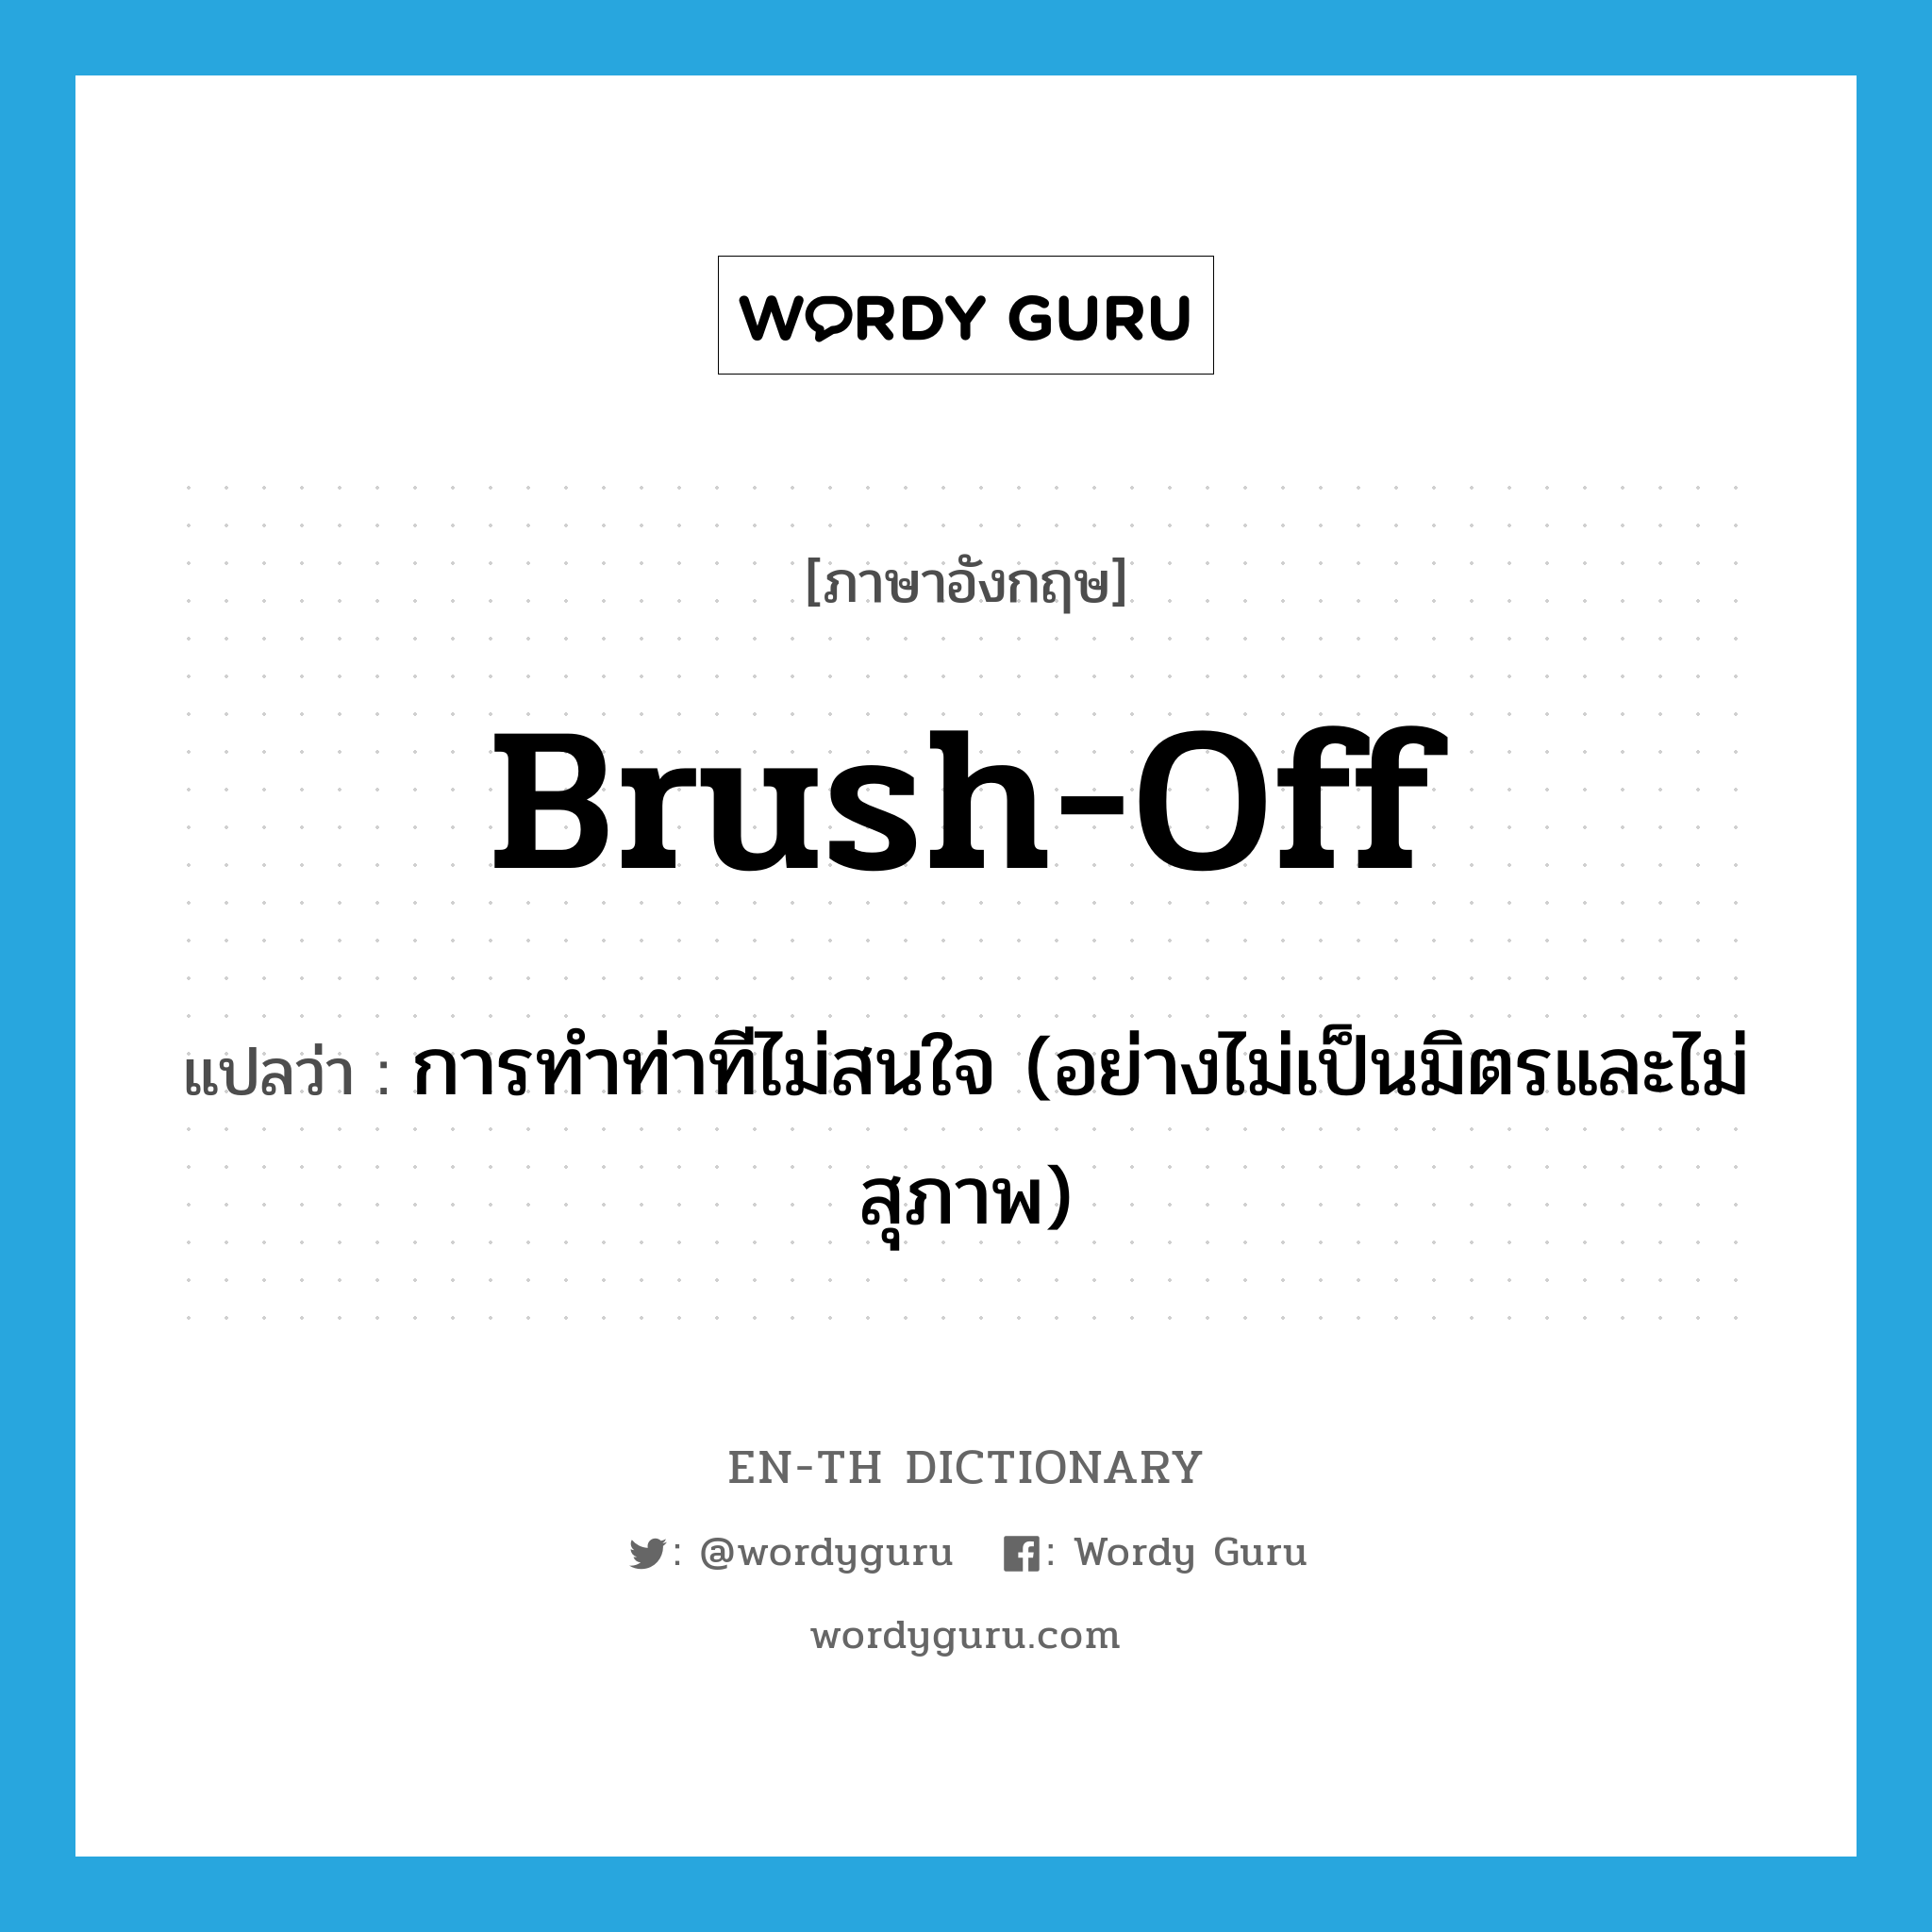 brush-off